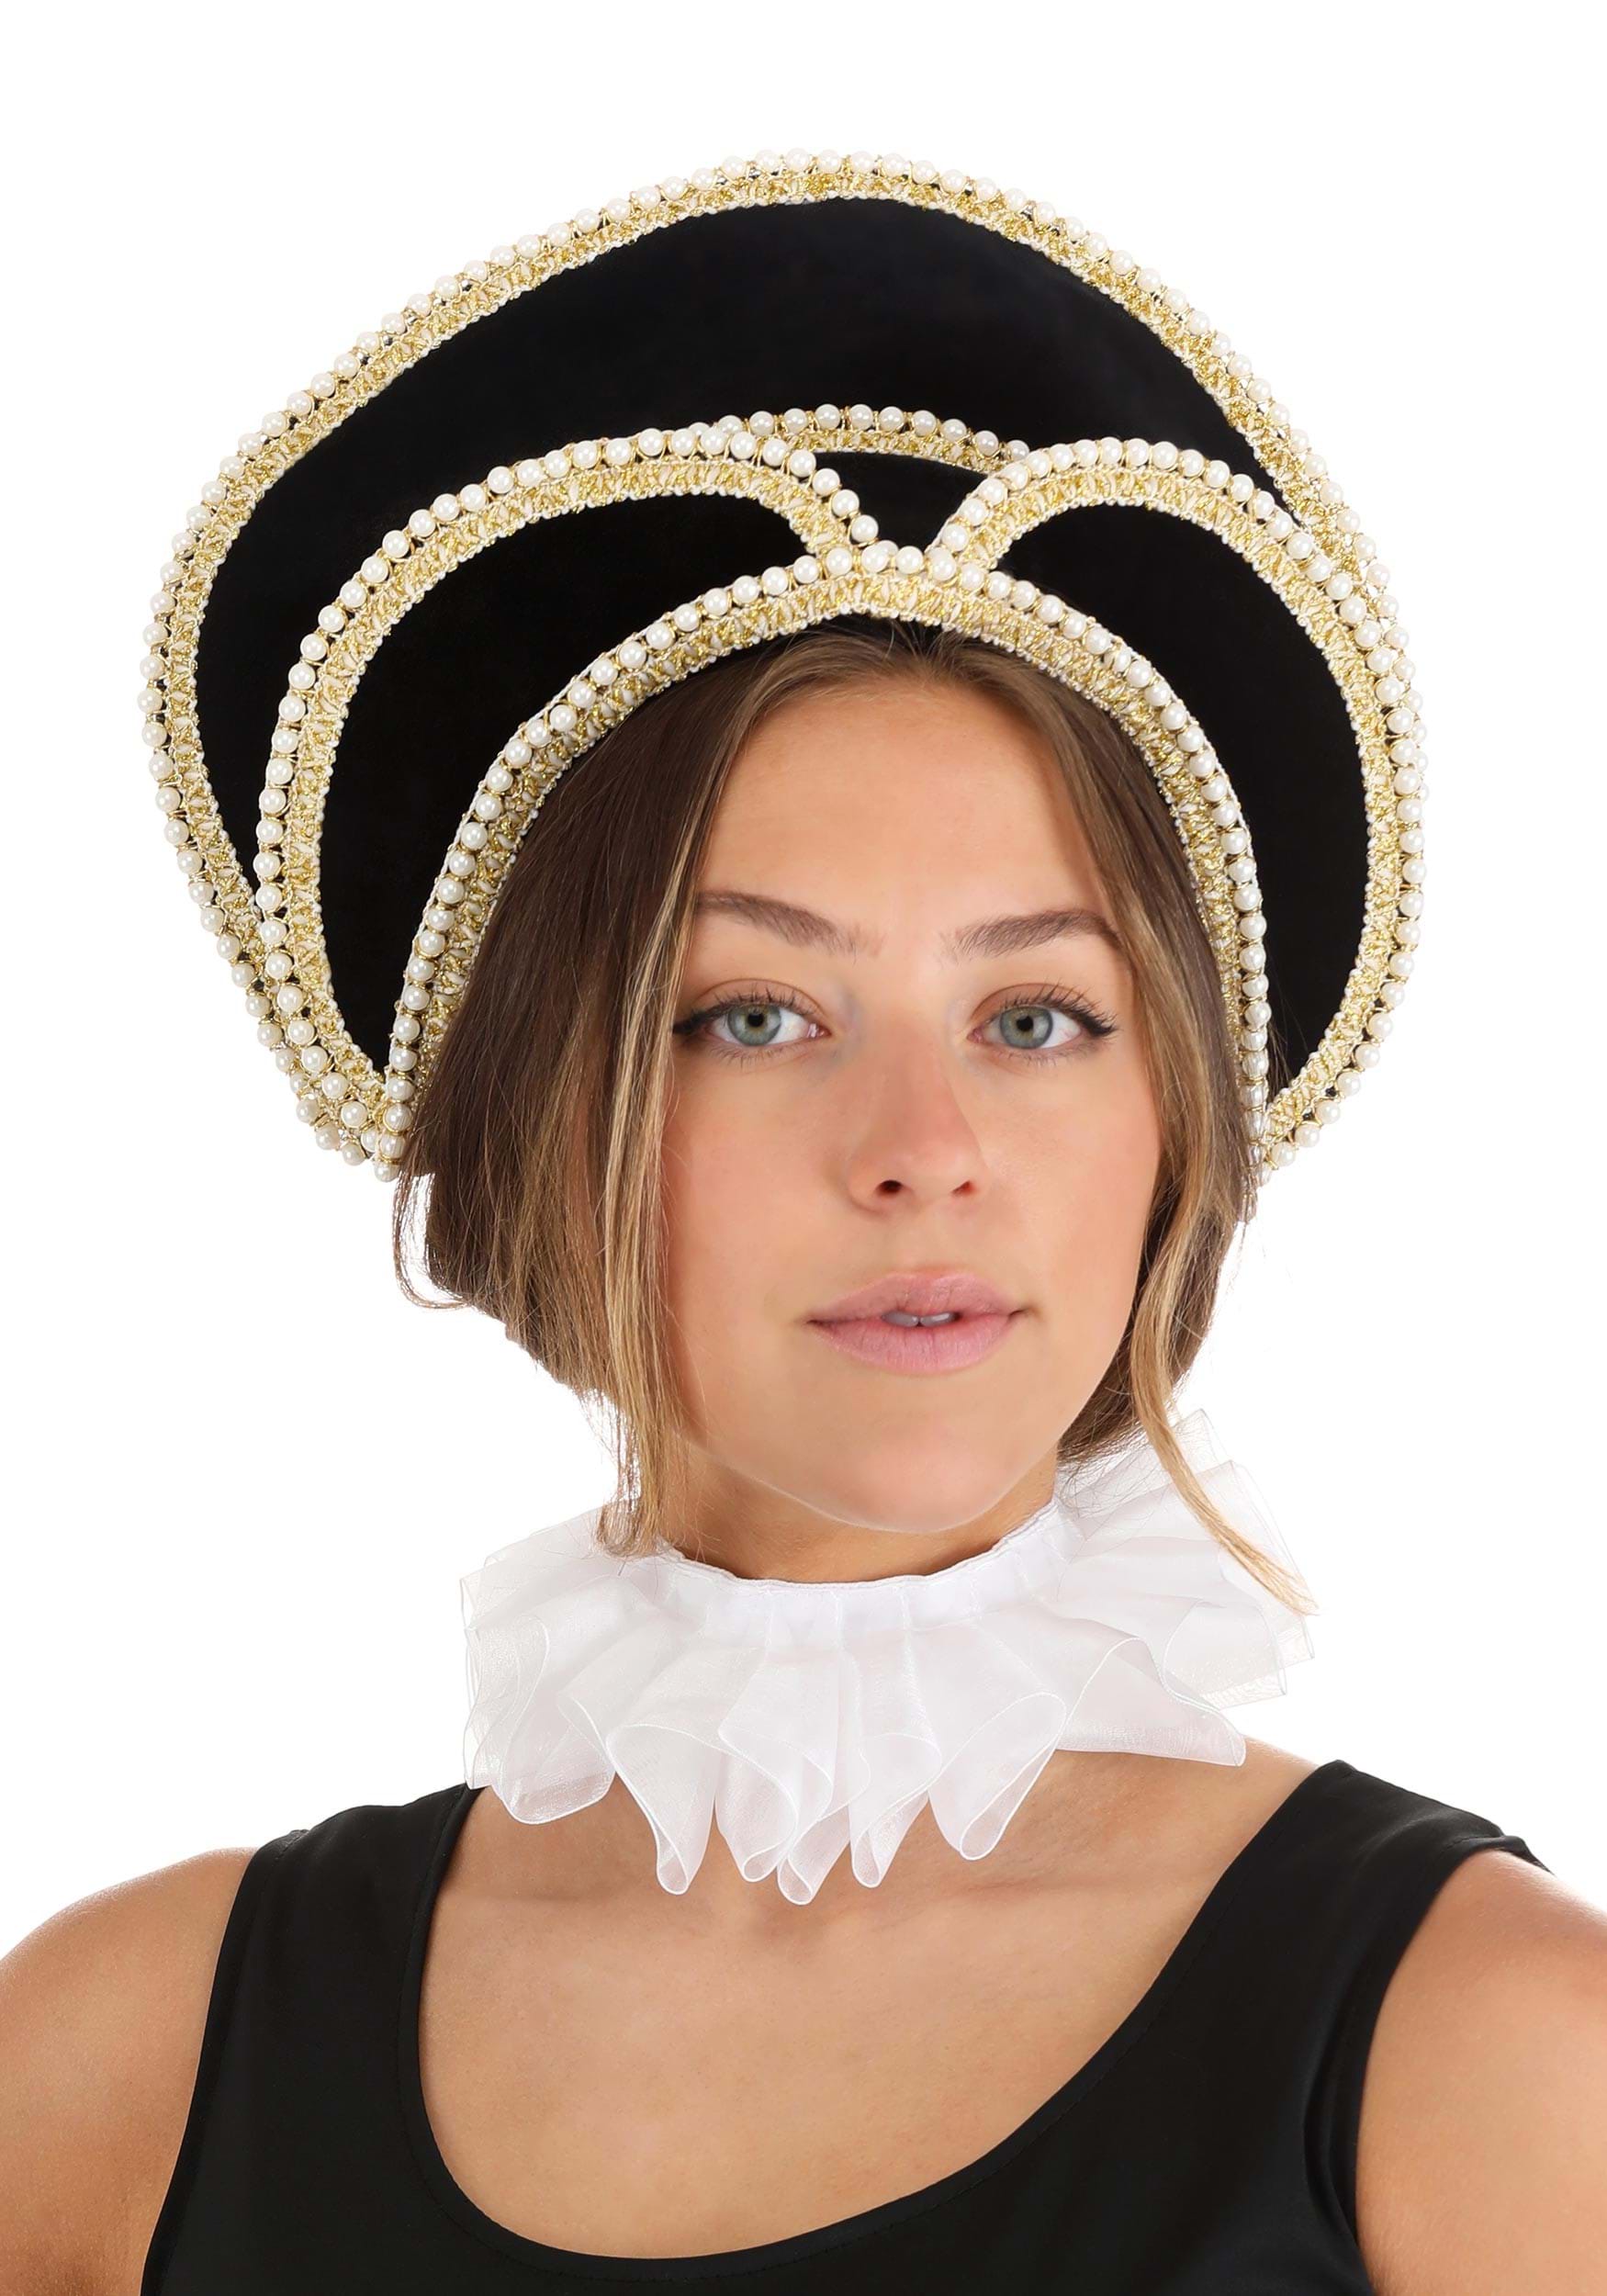 Women’s Queen Elizabeth I Costume Kit